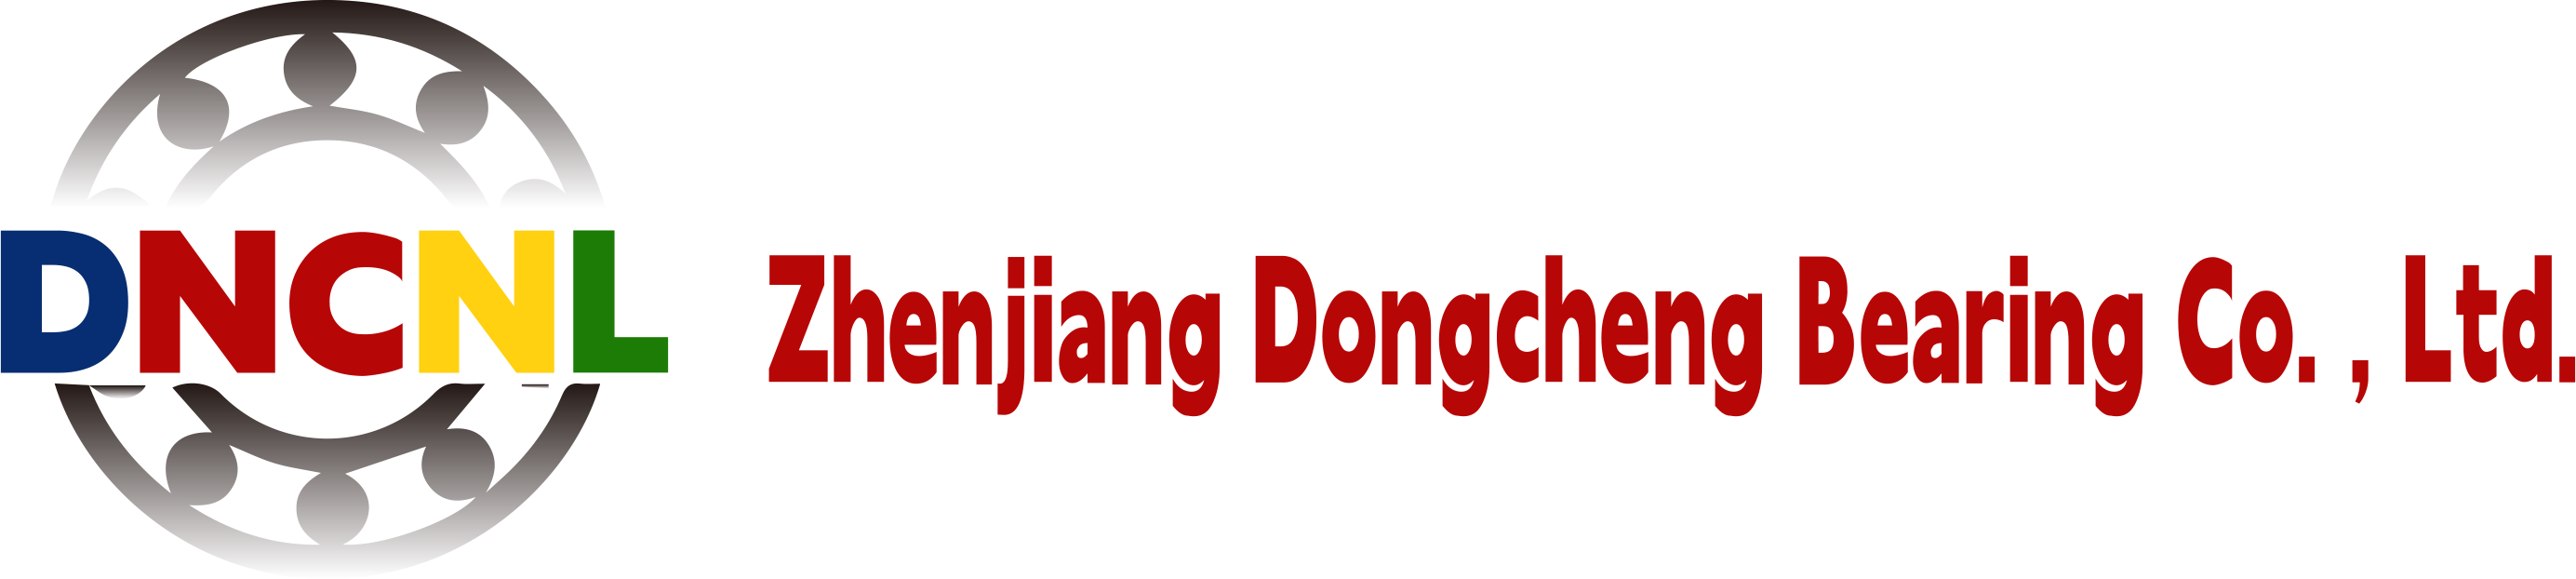 Zhenjiang Dongcheng Bearing Co., Ltd.